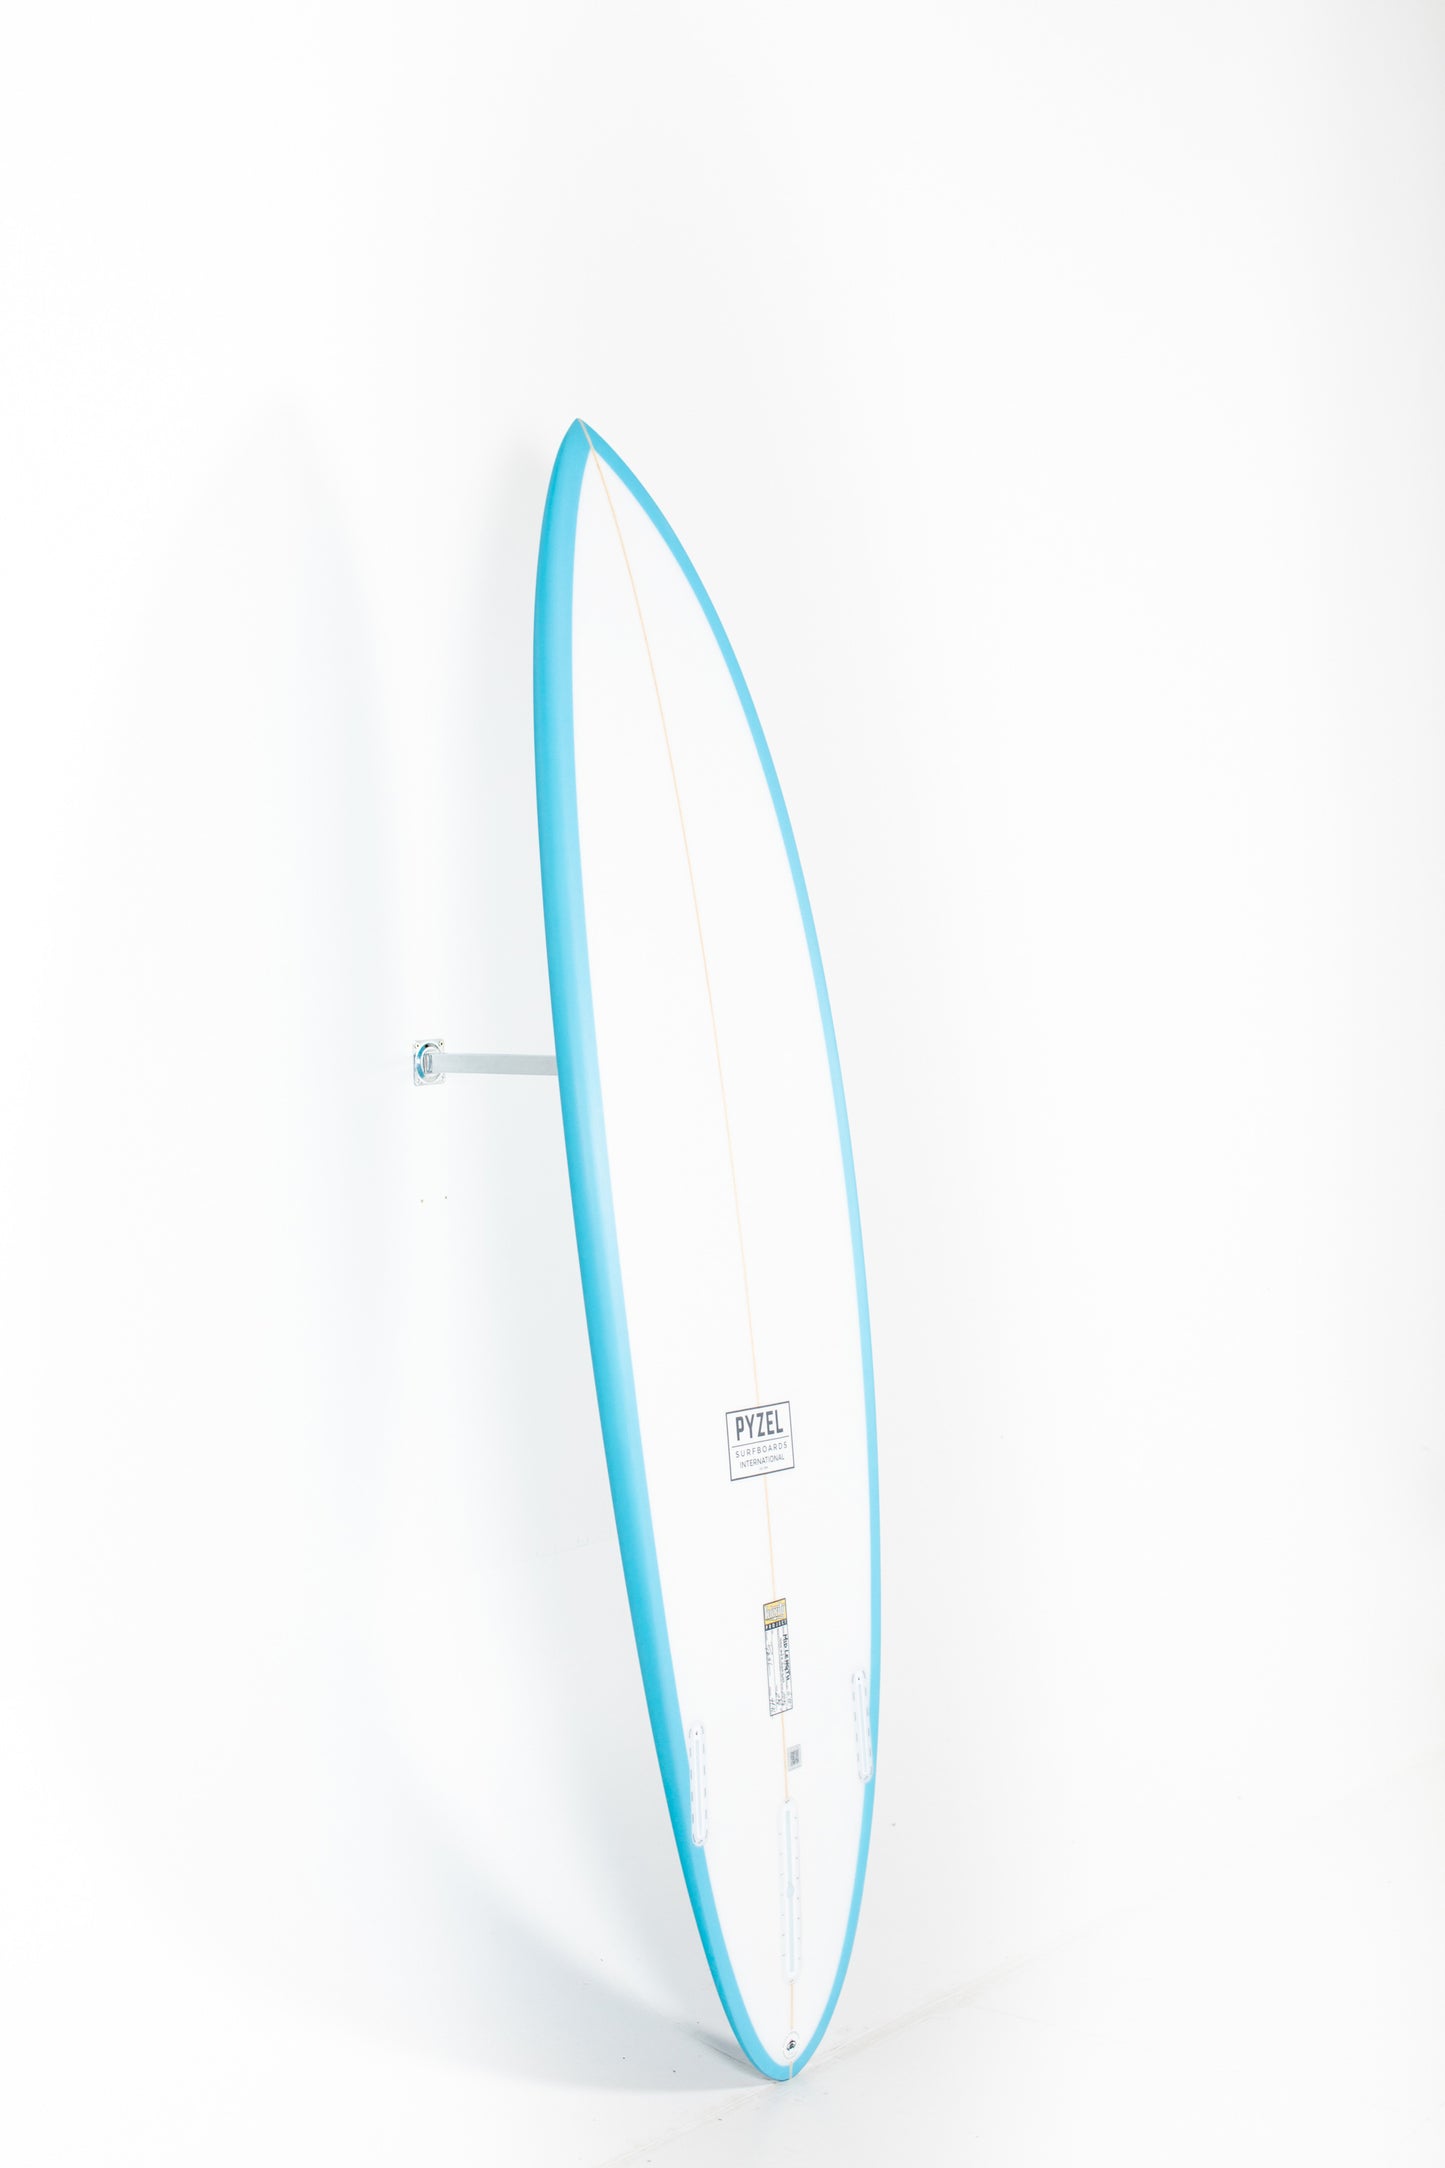 
                  
                    Pukas Surf Shop - Pyzel Surfboards - MID LENGTH CRISIS - 6'10"x20 7/8"x2 3/4"x41.90L.  - REF.555320
                  
                